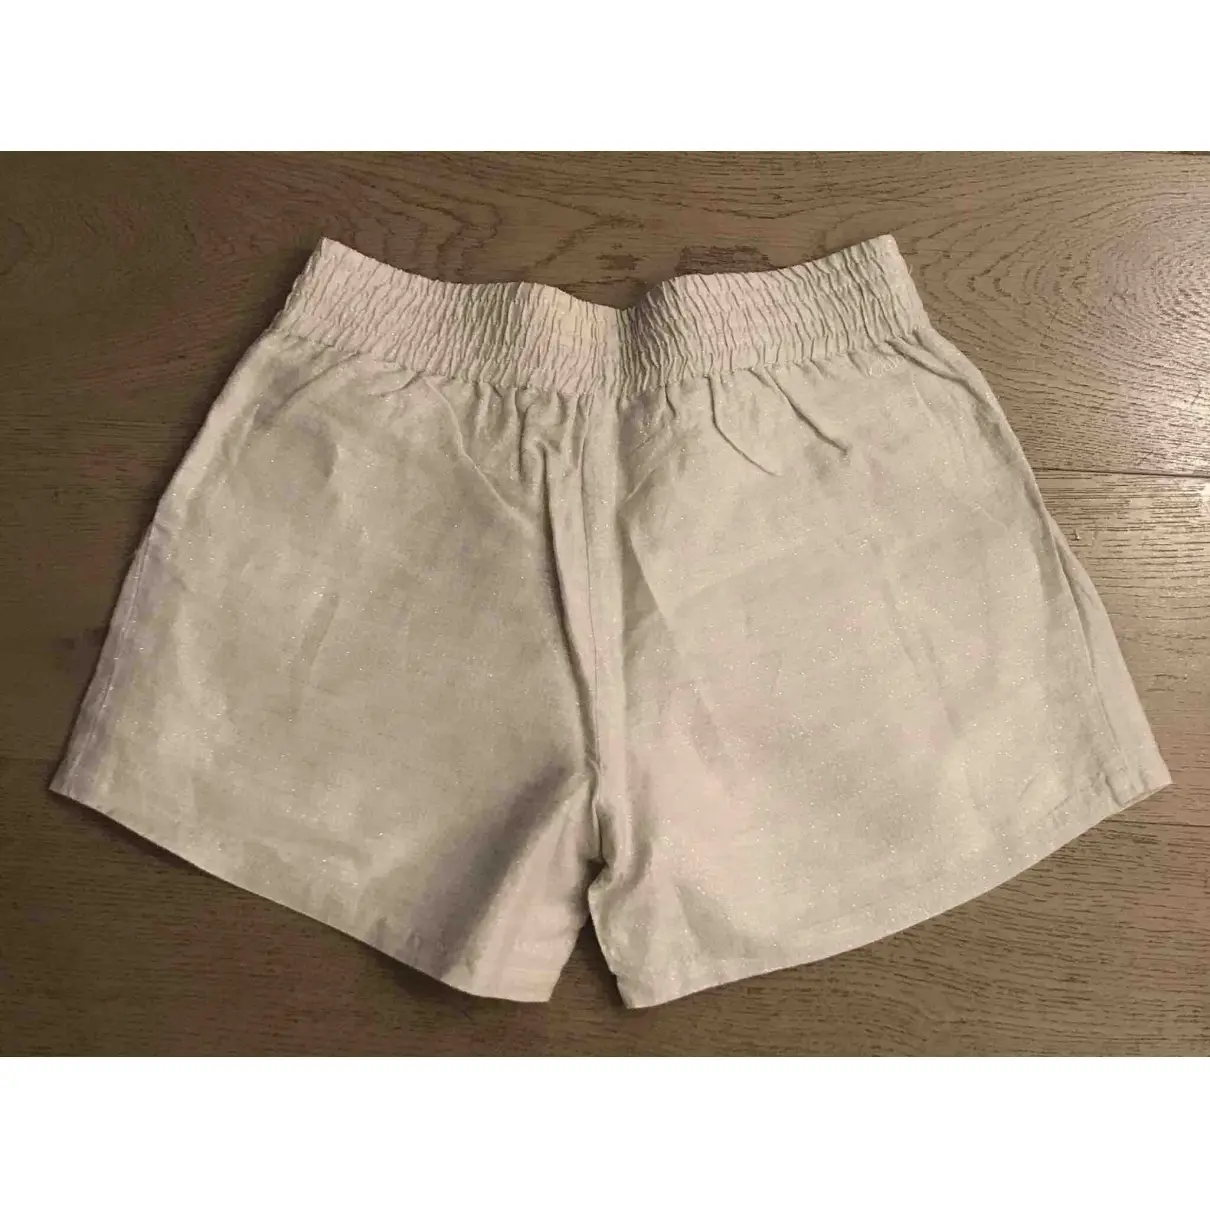 Chloé Cloth short for sale